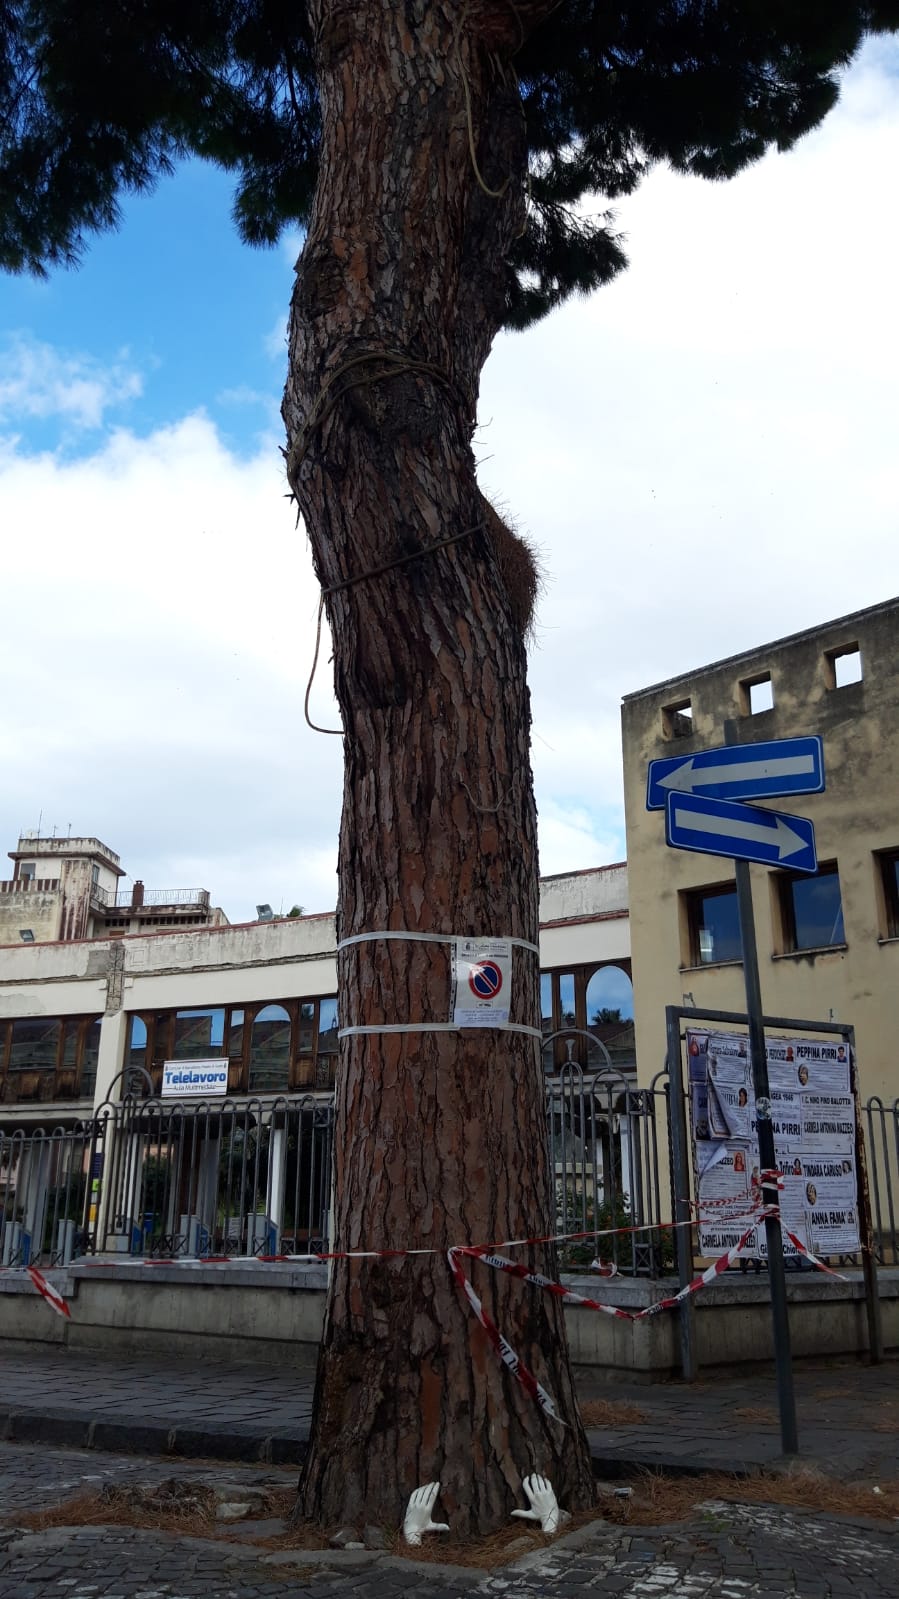 Barcellona PG. RiforestAzione Barcellona “Sospendere abbattimento ultimo pino di Piazza San Sebastiano” 